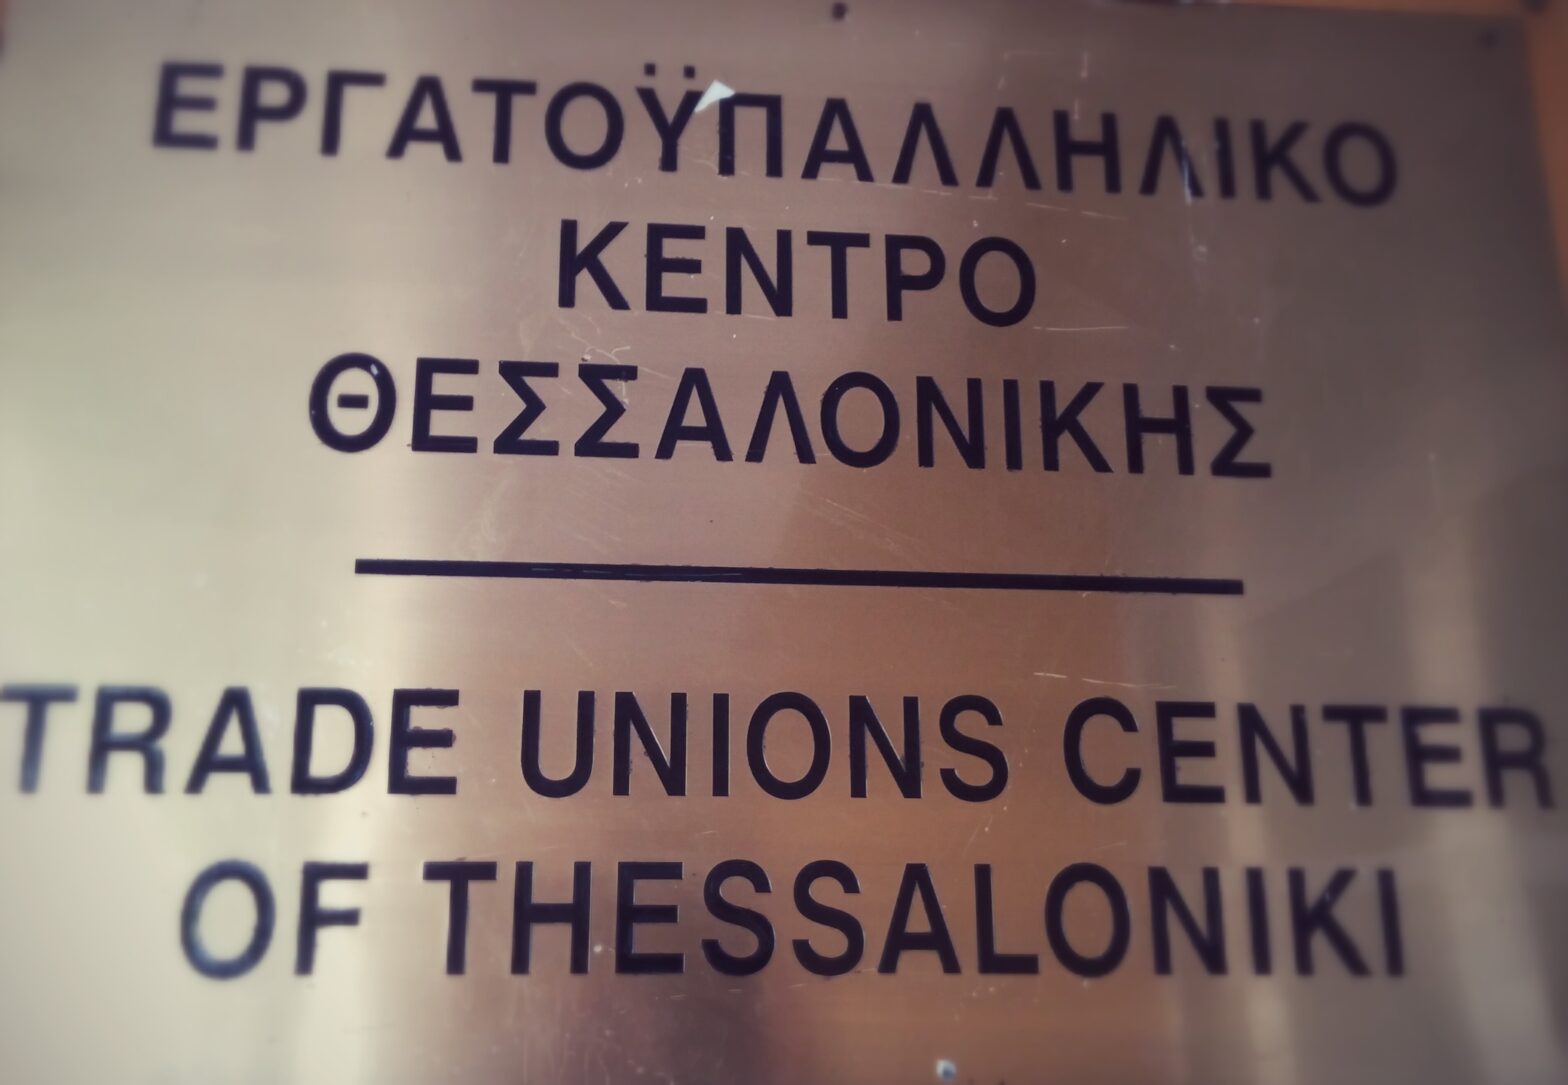 ΕΓΚΥΚΛΙΟΣ Προς τις Διοικήσεις των Σωματείων της Δύναμης του Ε.Κ.Θ. – Ενημέρωση- Ανακοίνωση: Νέα σύνθεση Διοίκησης για την Ένωση Εργαζομένων Καταναλωτών Ελλάδας, παράρτημα Θεσσαλονίκης